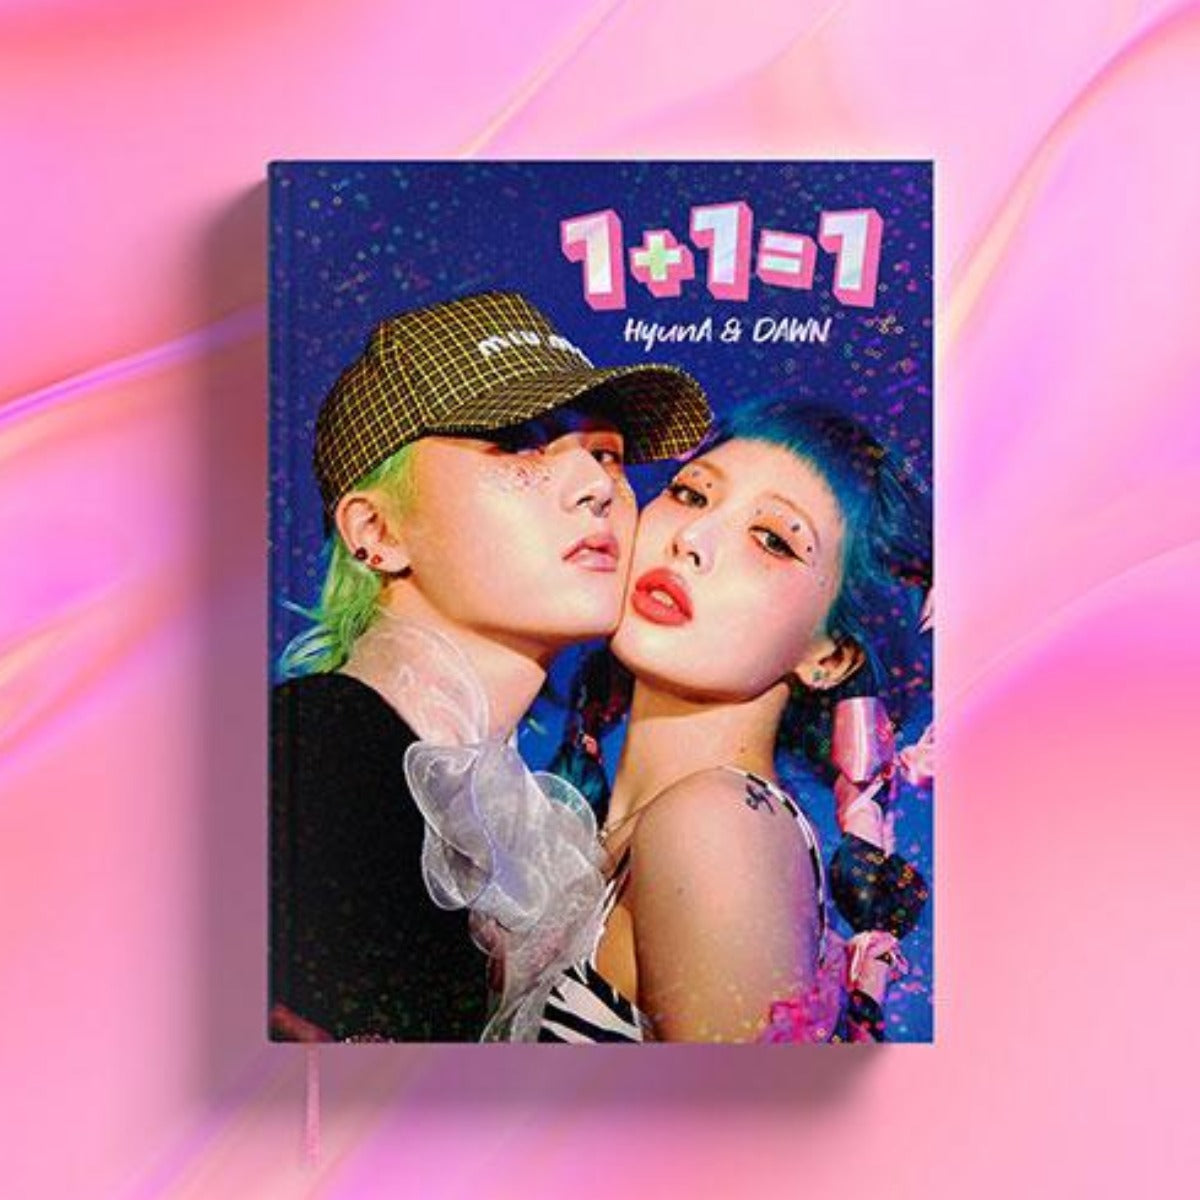 HyunA & DAWN EP Album Vol. 1 - 1+1=1